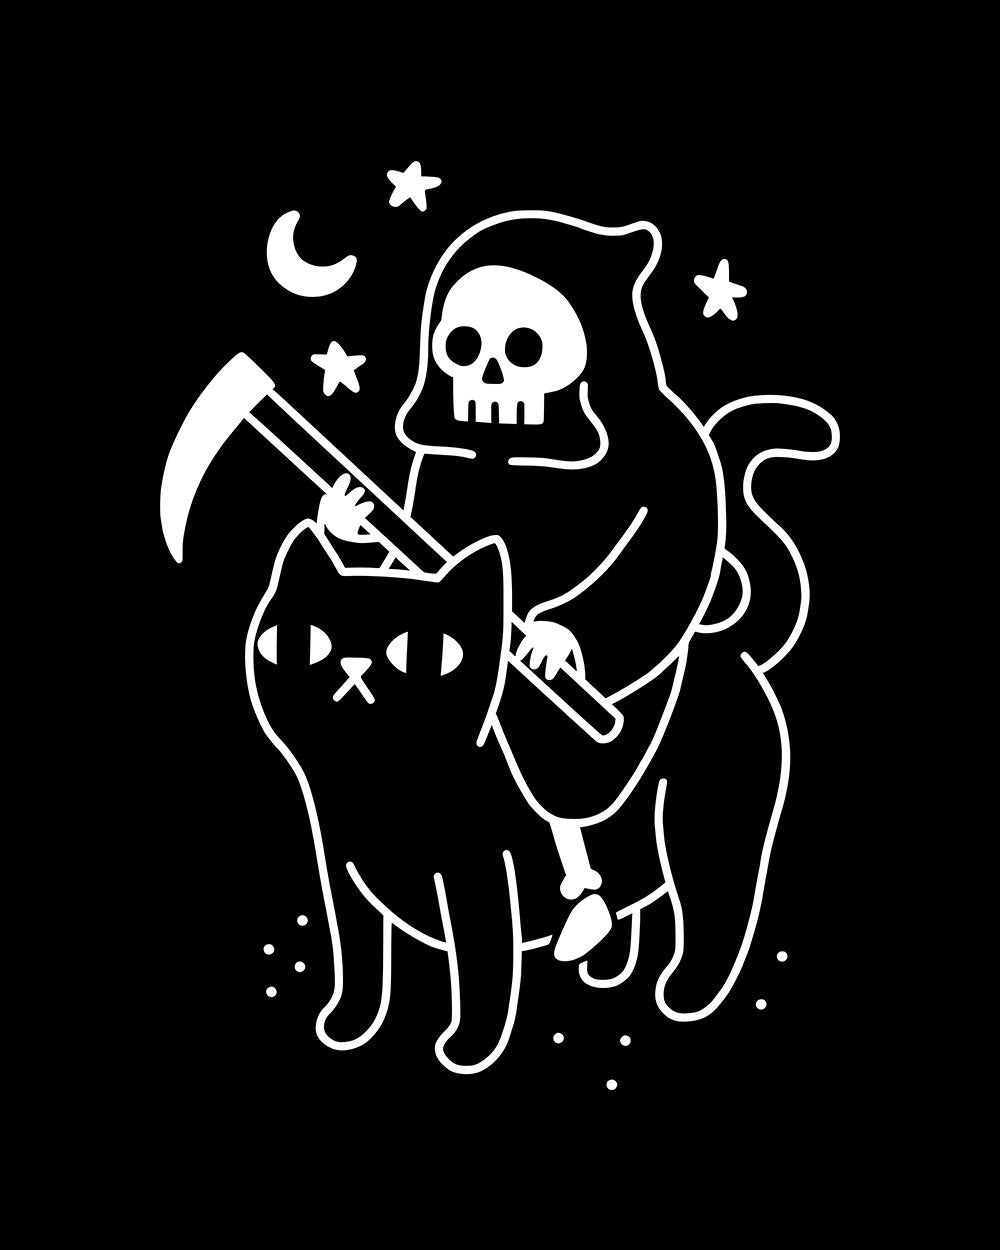 Death Rides a Black Cat T-Shirt Australia Online #colour_black